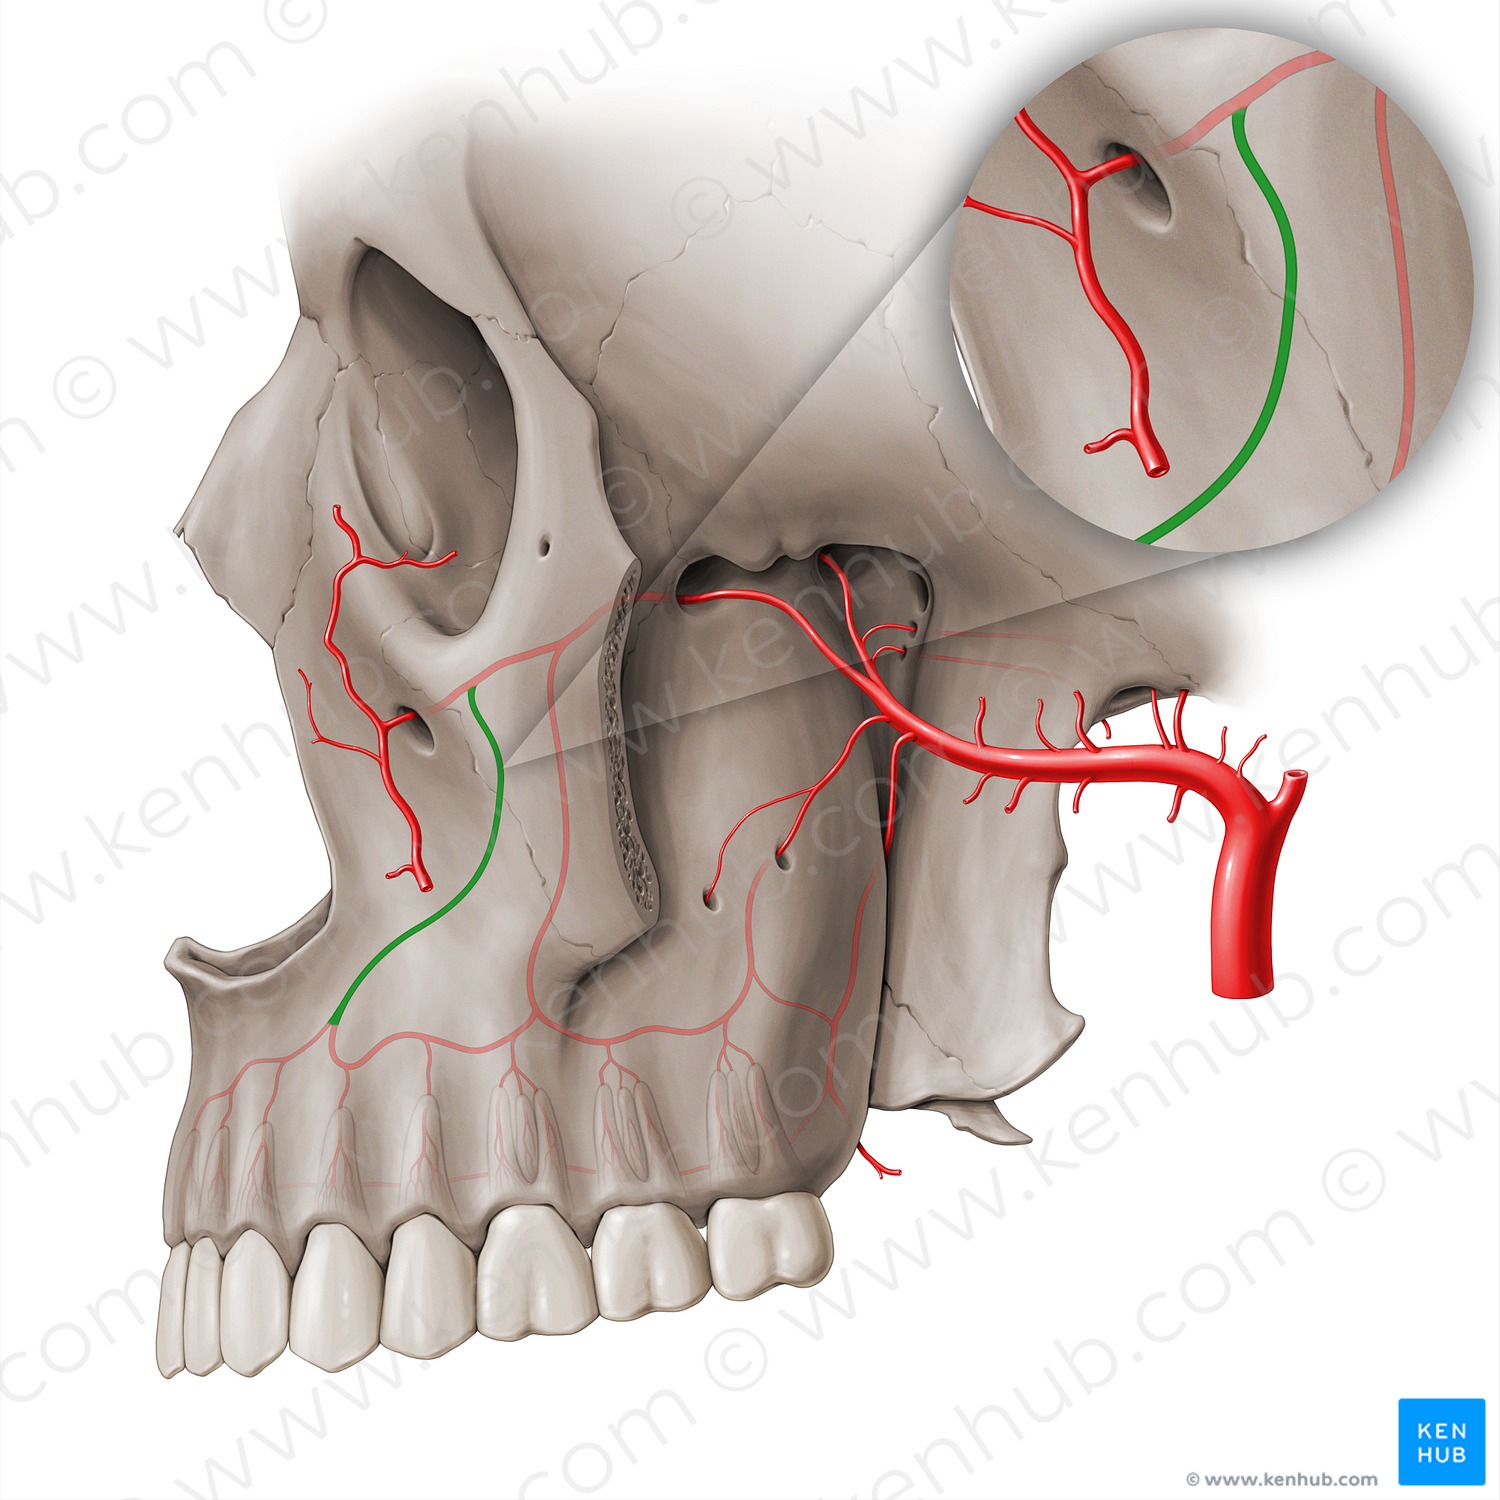 Anterior superior alveolar artery (#18503)